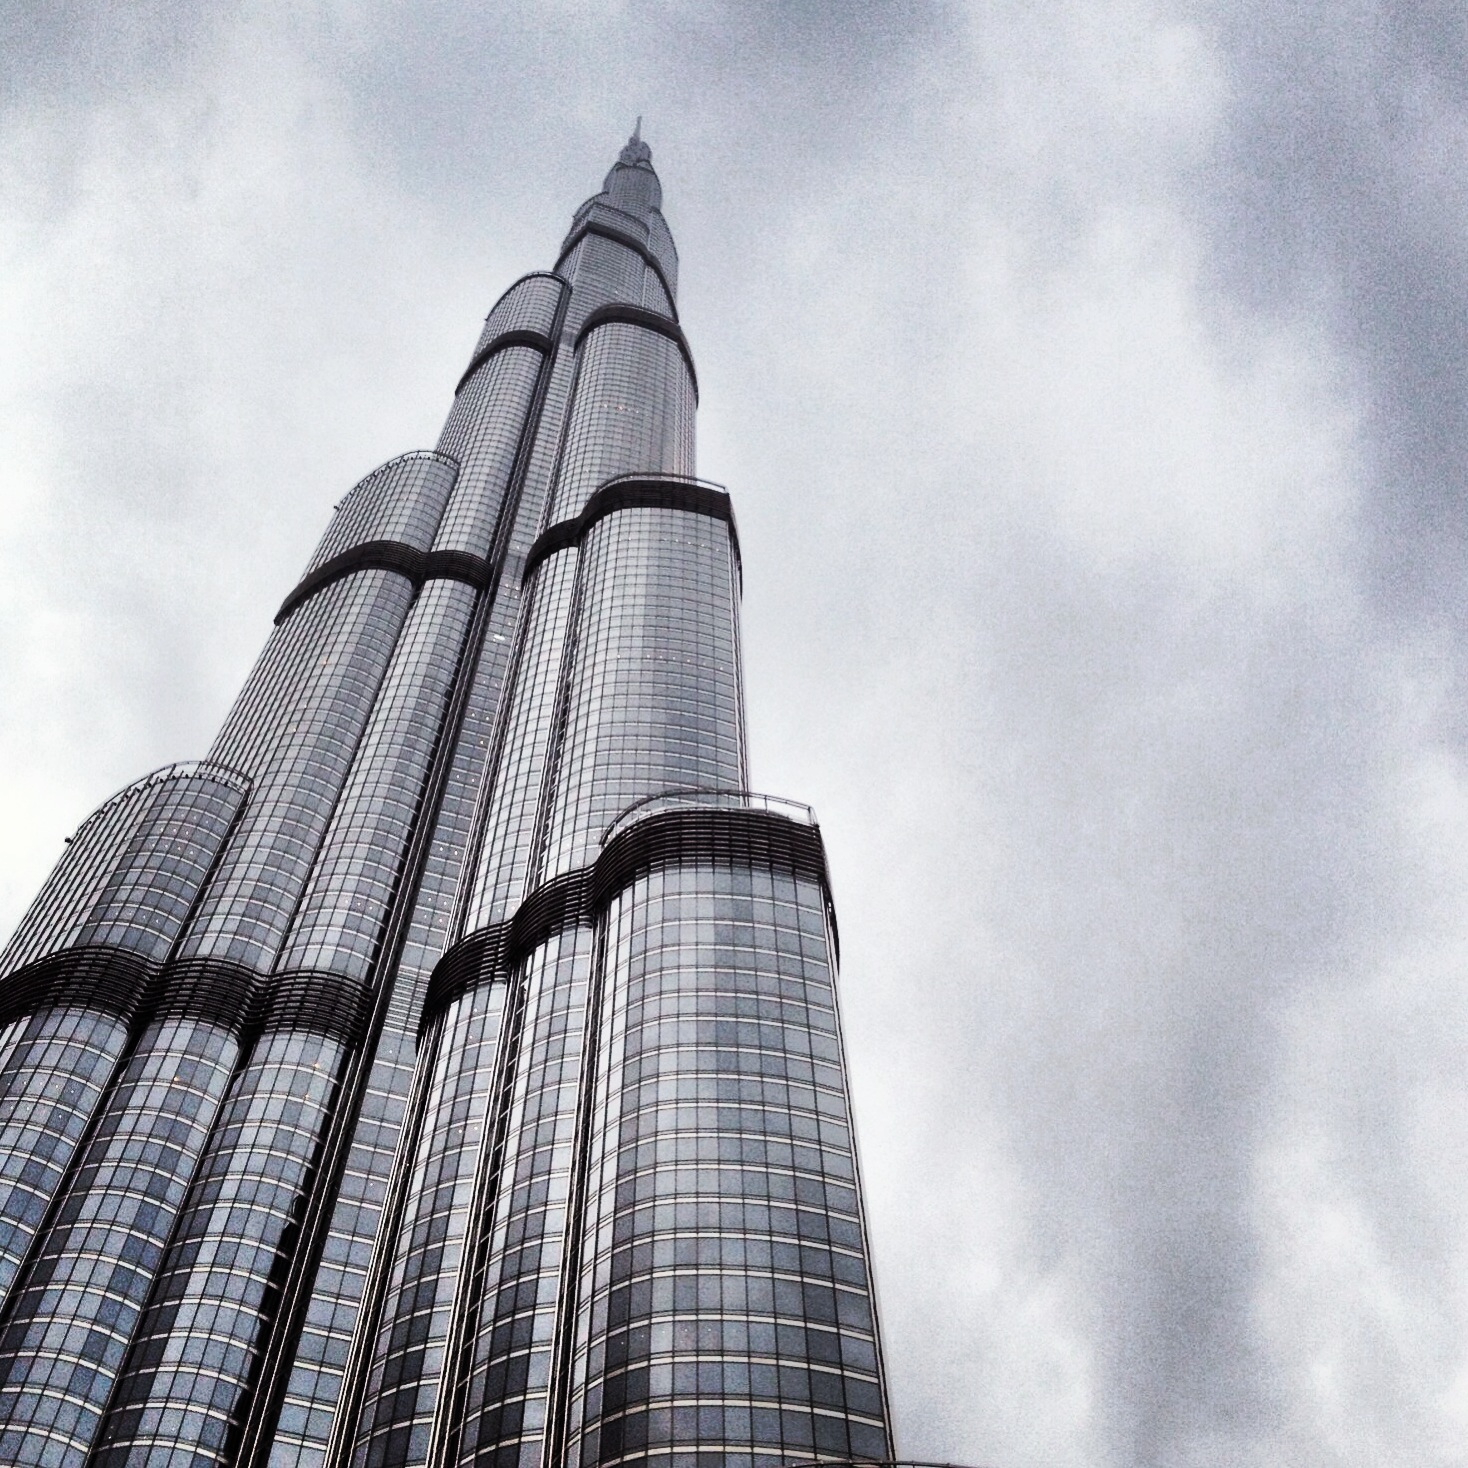 Black & white of the Burj Khalifa